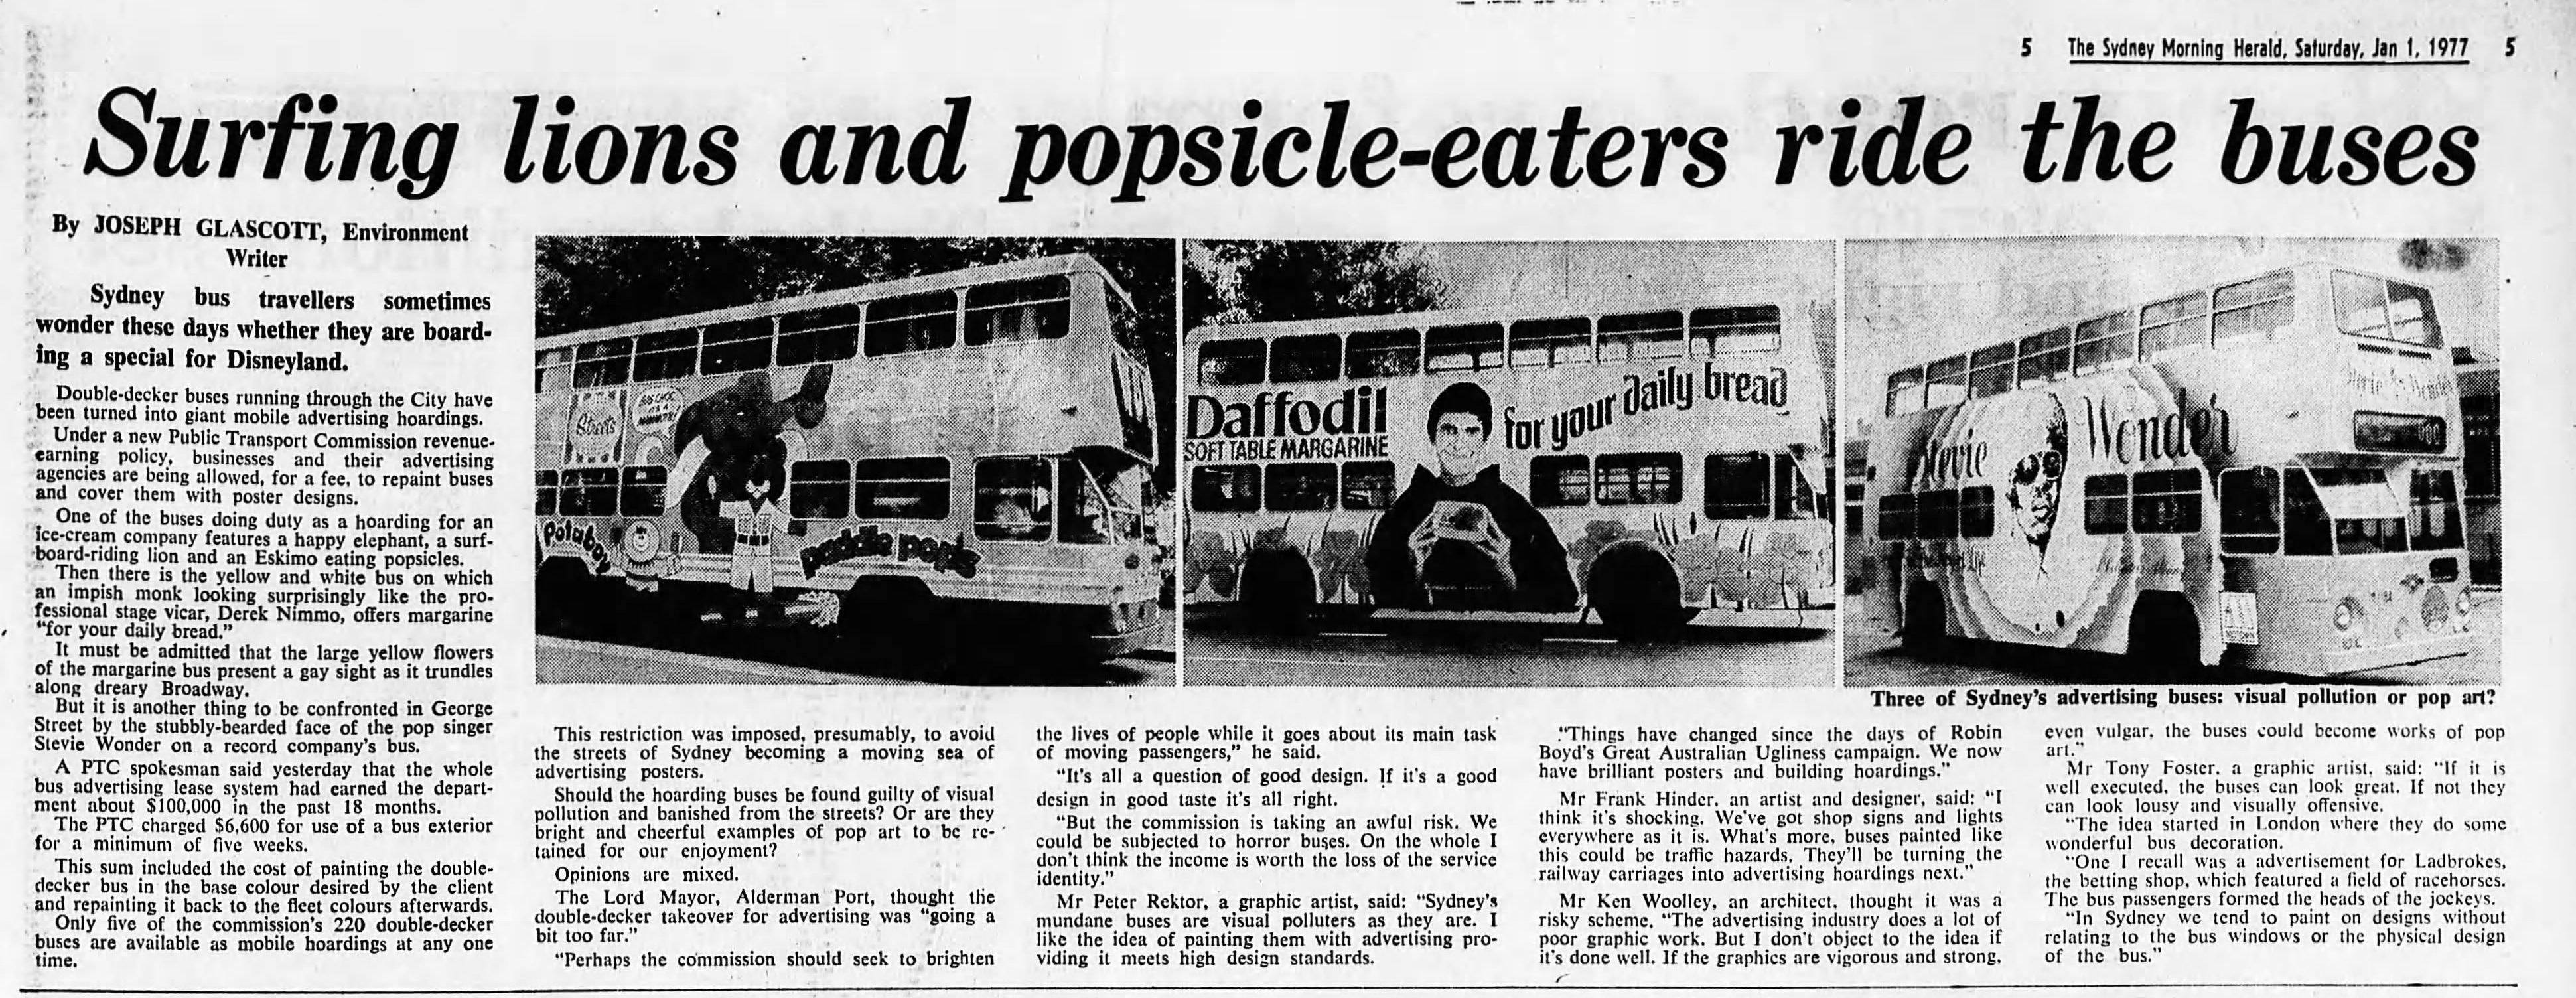 Bus advertising January 1 1977 SMH 5